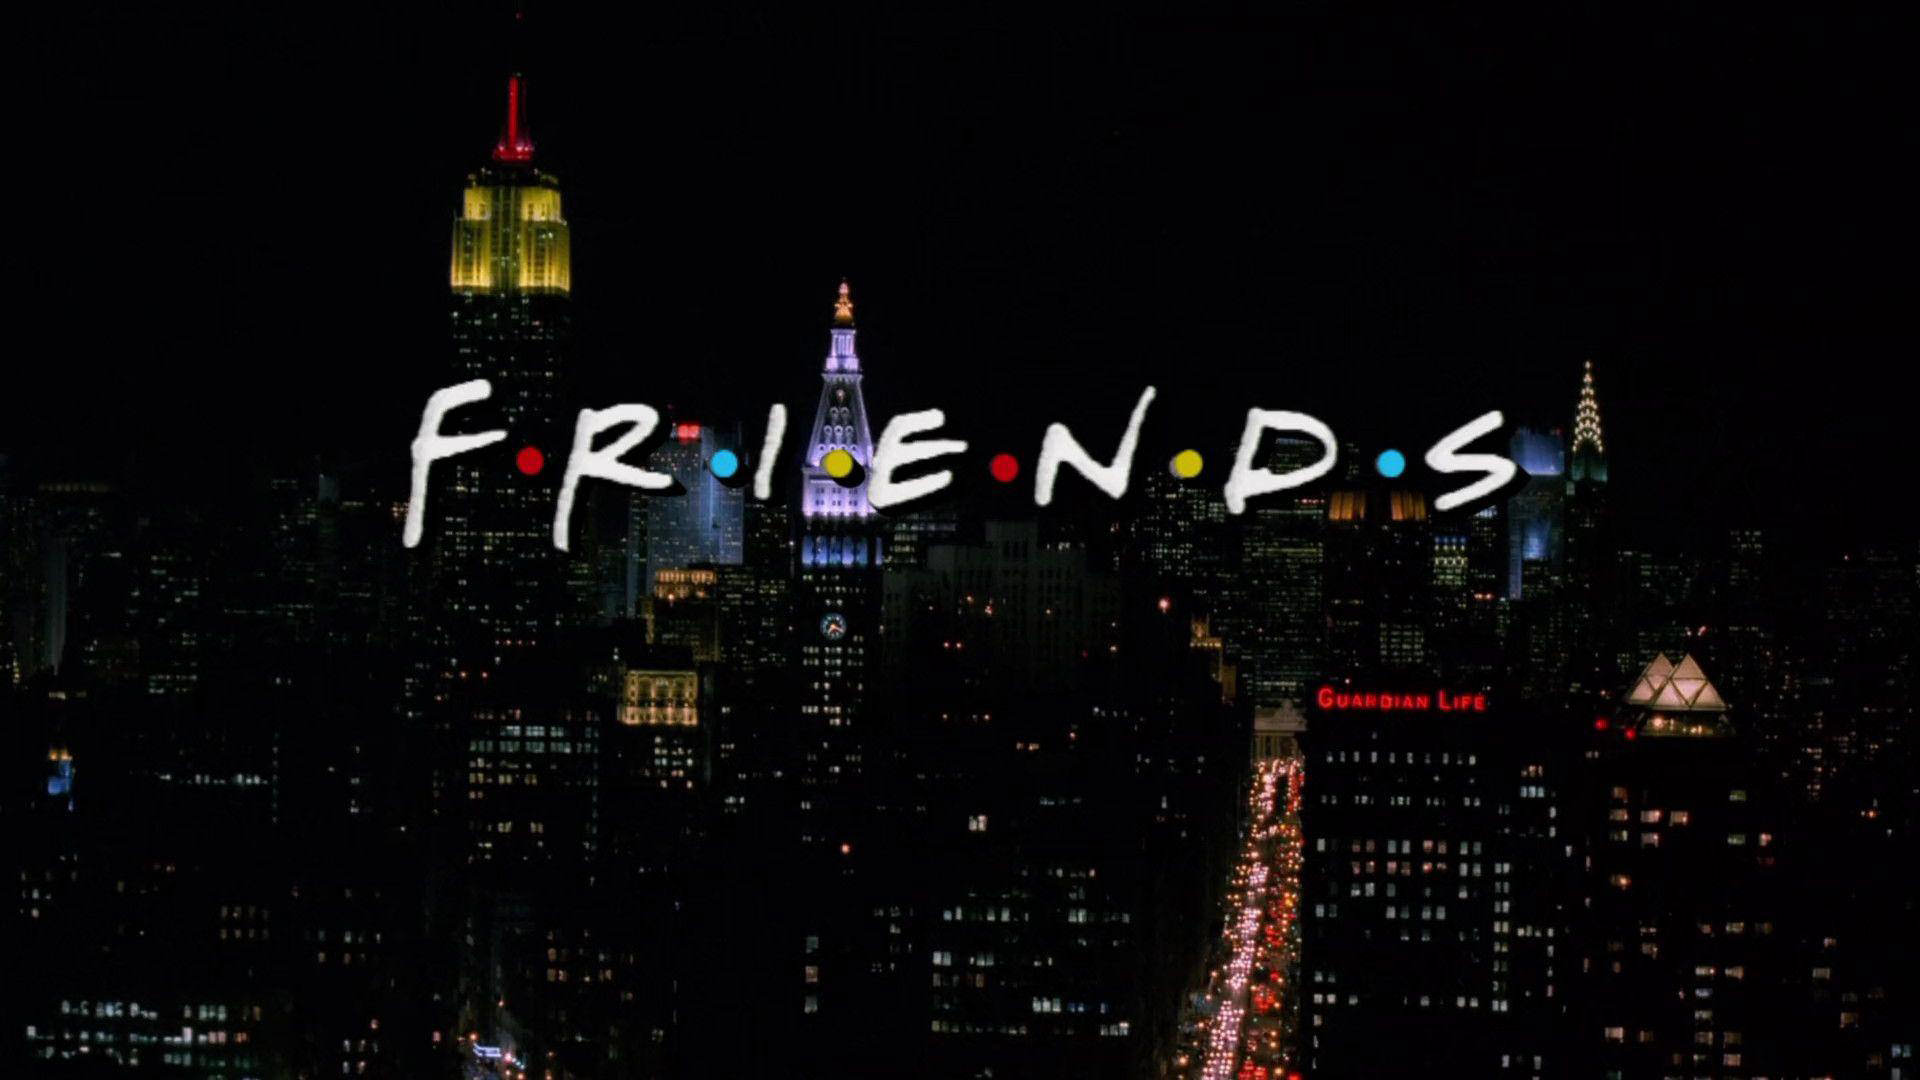 متیو پری تاریخ شروع فیلمبرداری قسمت ویژه سریال Friends را اعلام کرد